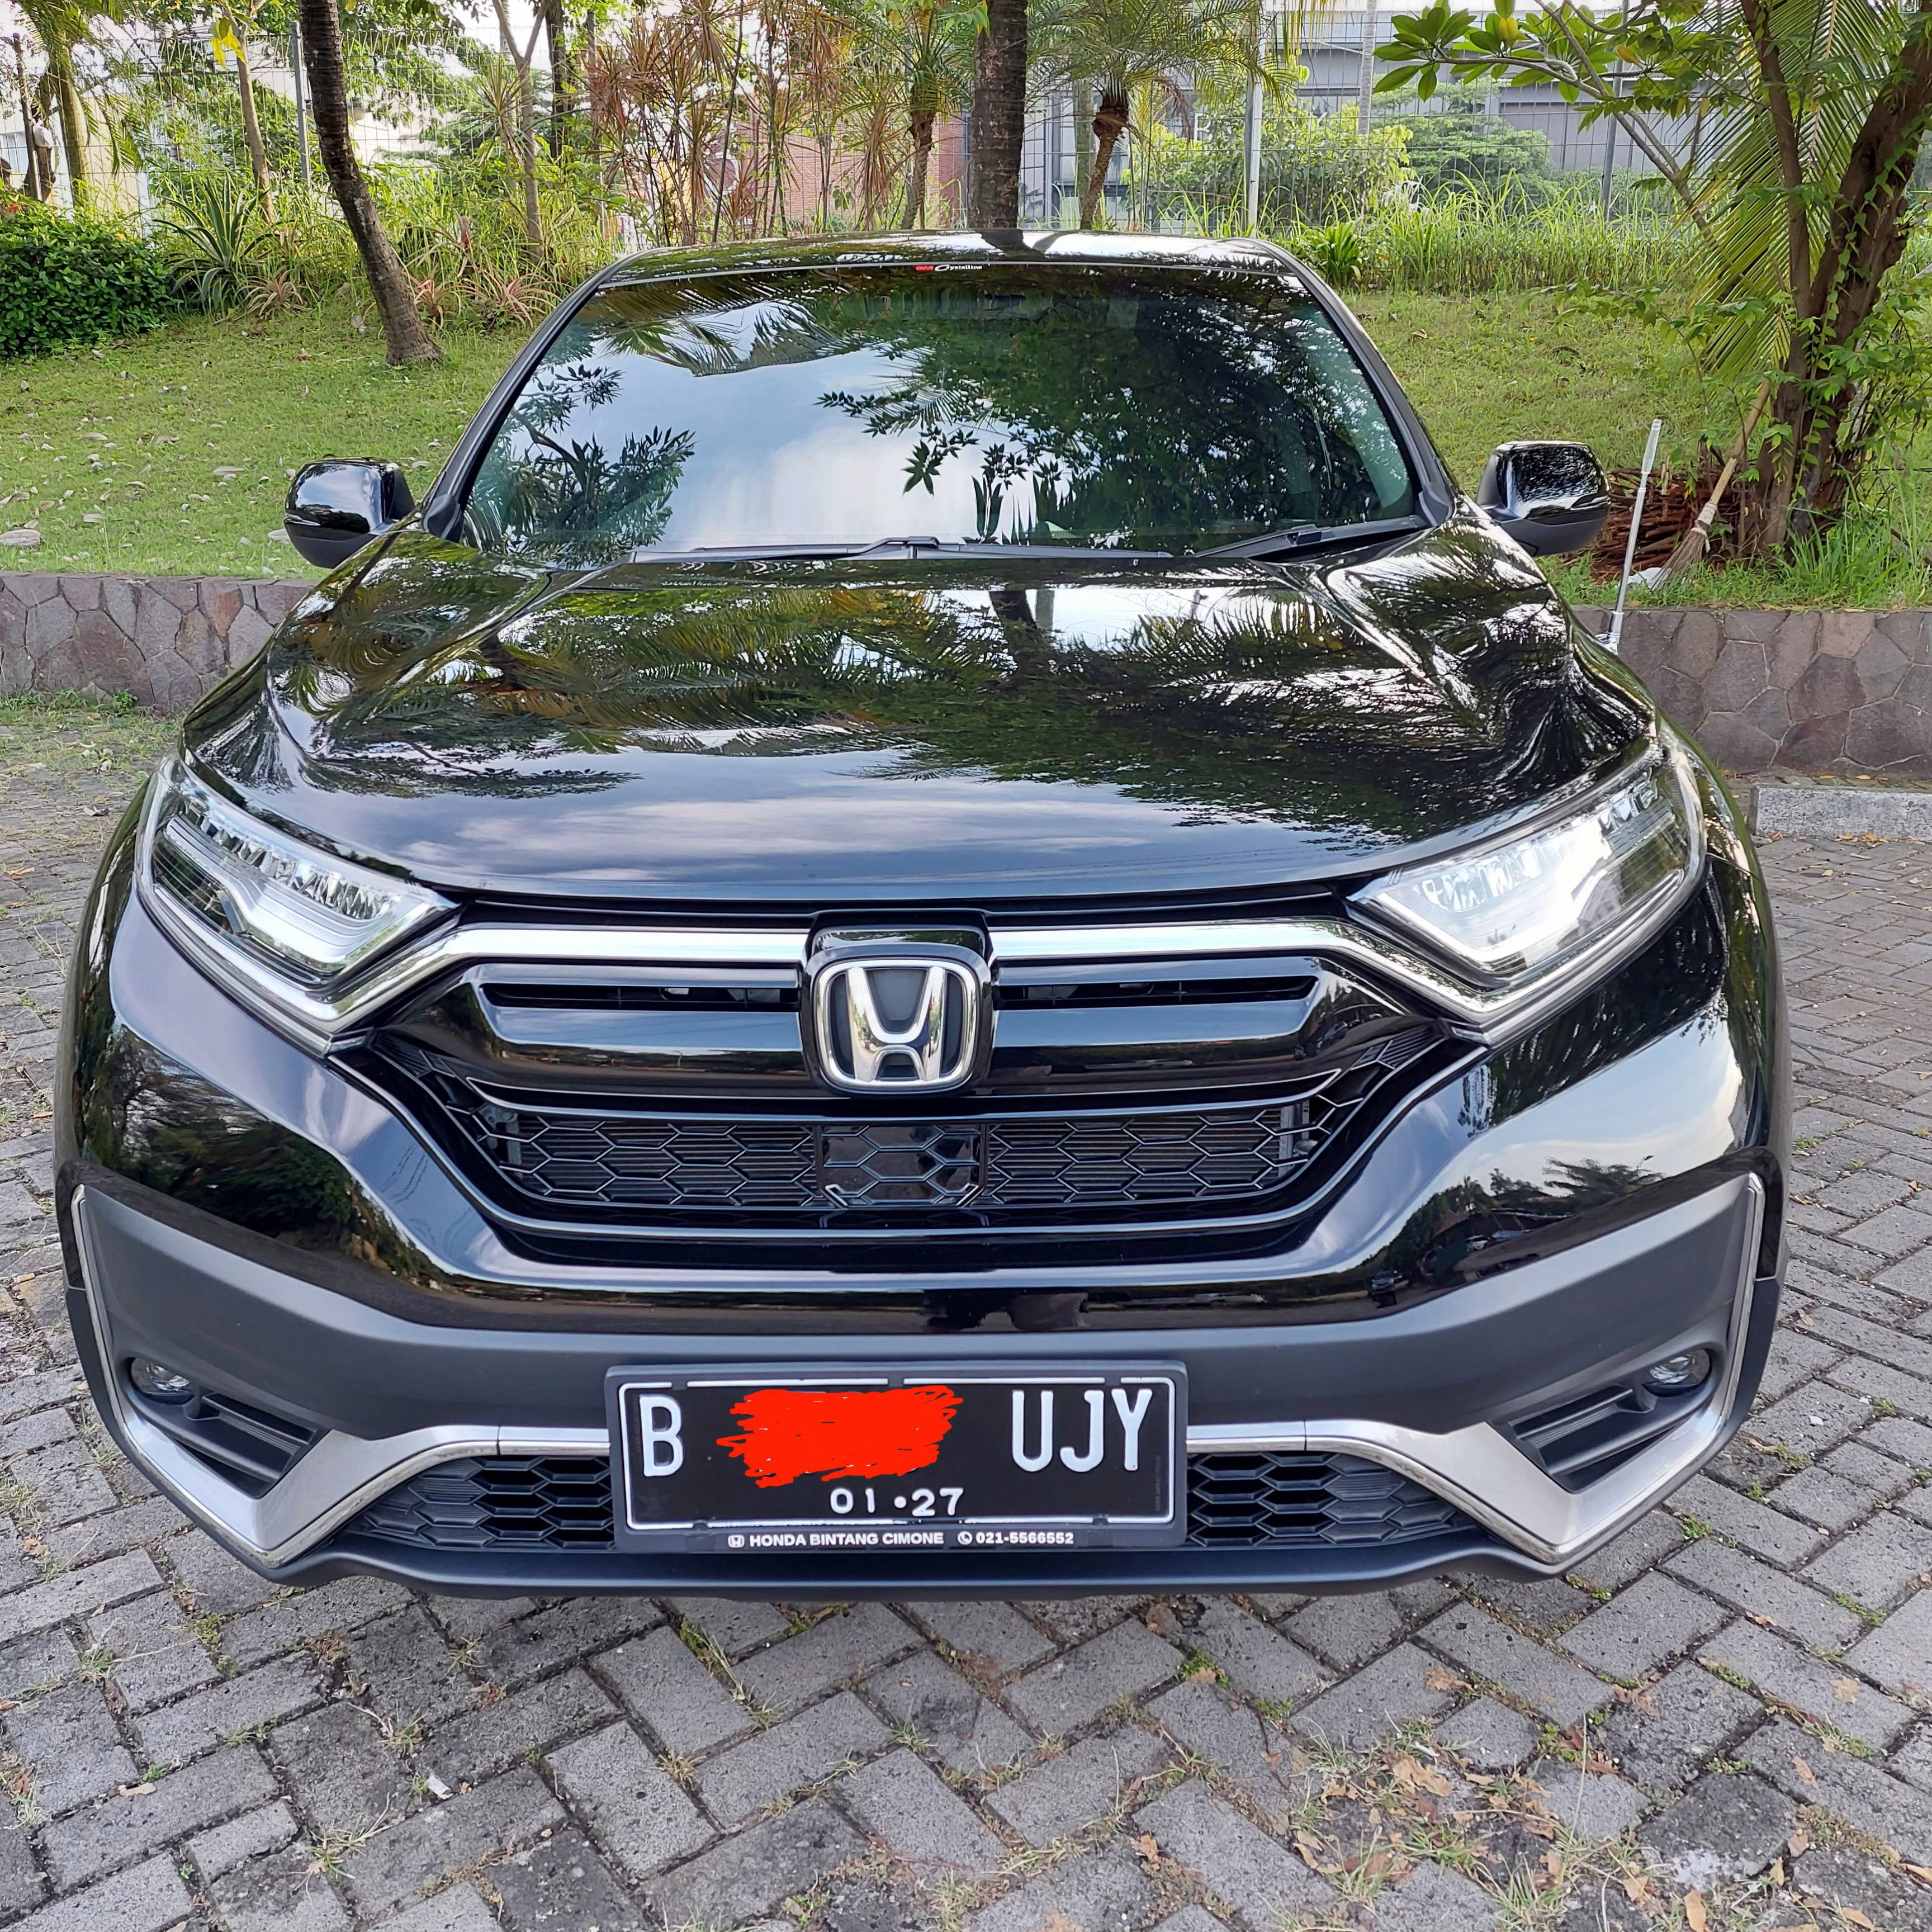 2021 Honda CRV Bekas